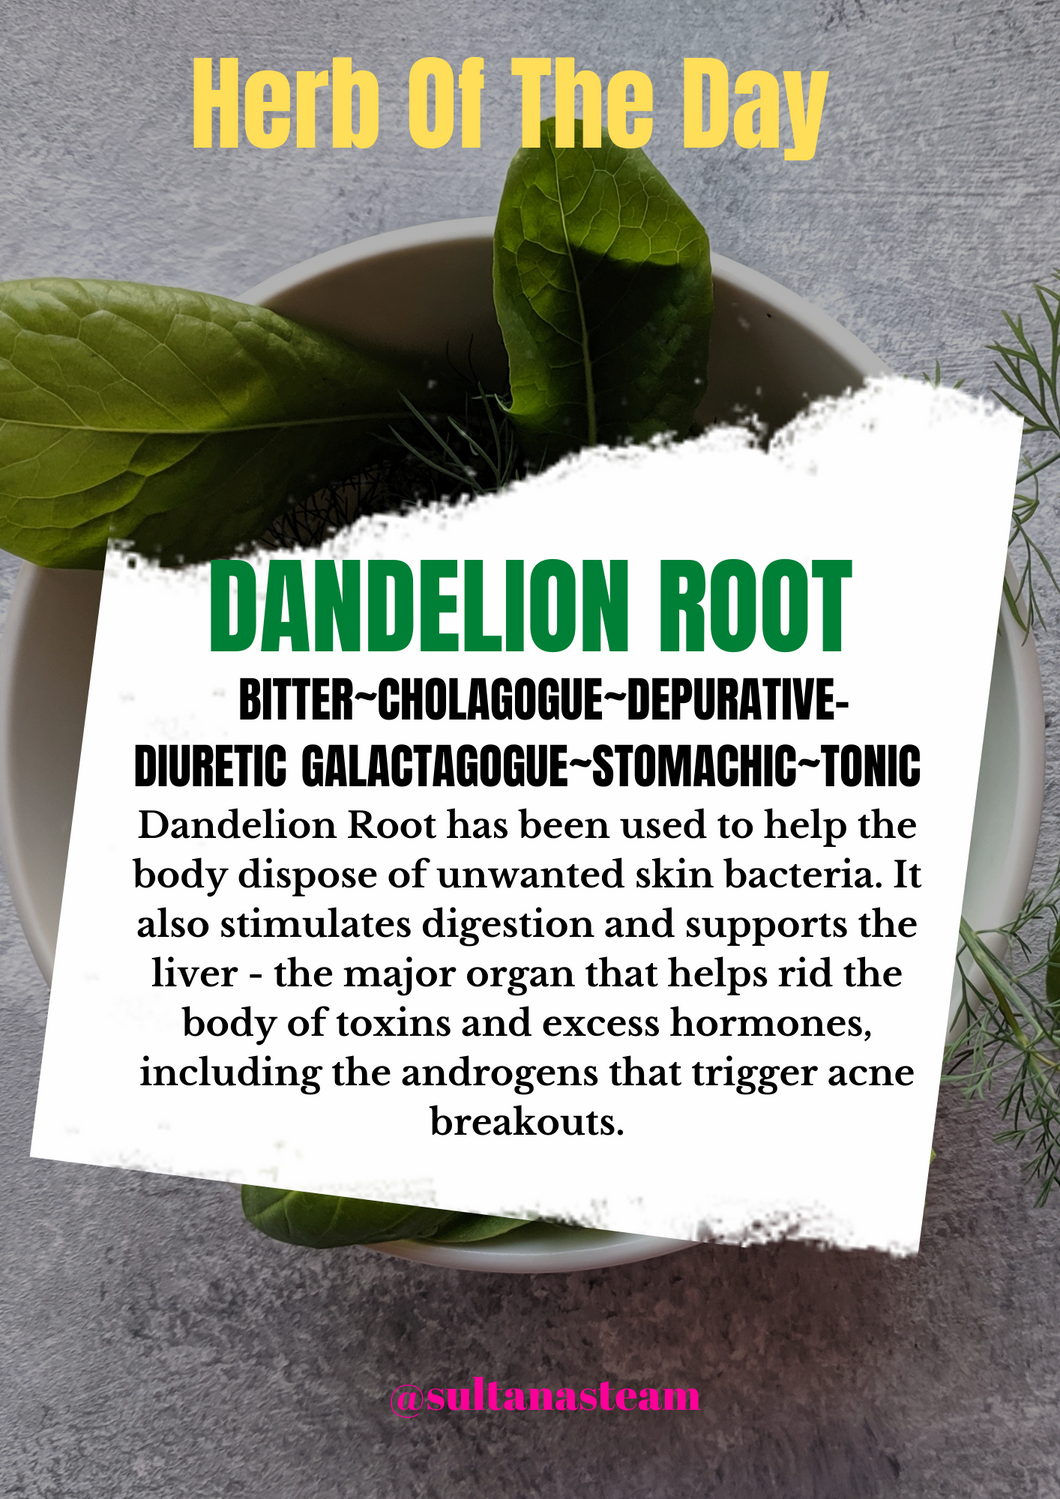 Dandelion Leaf/Root